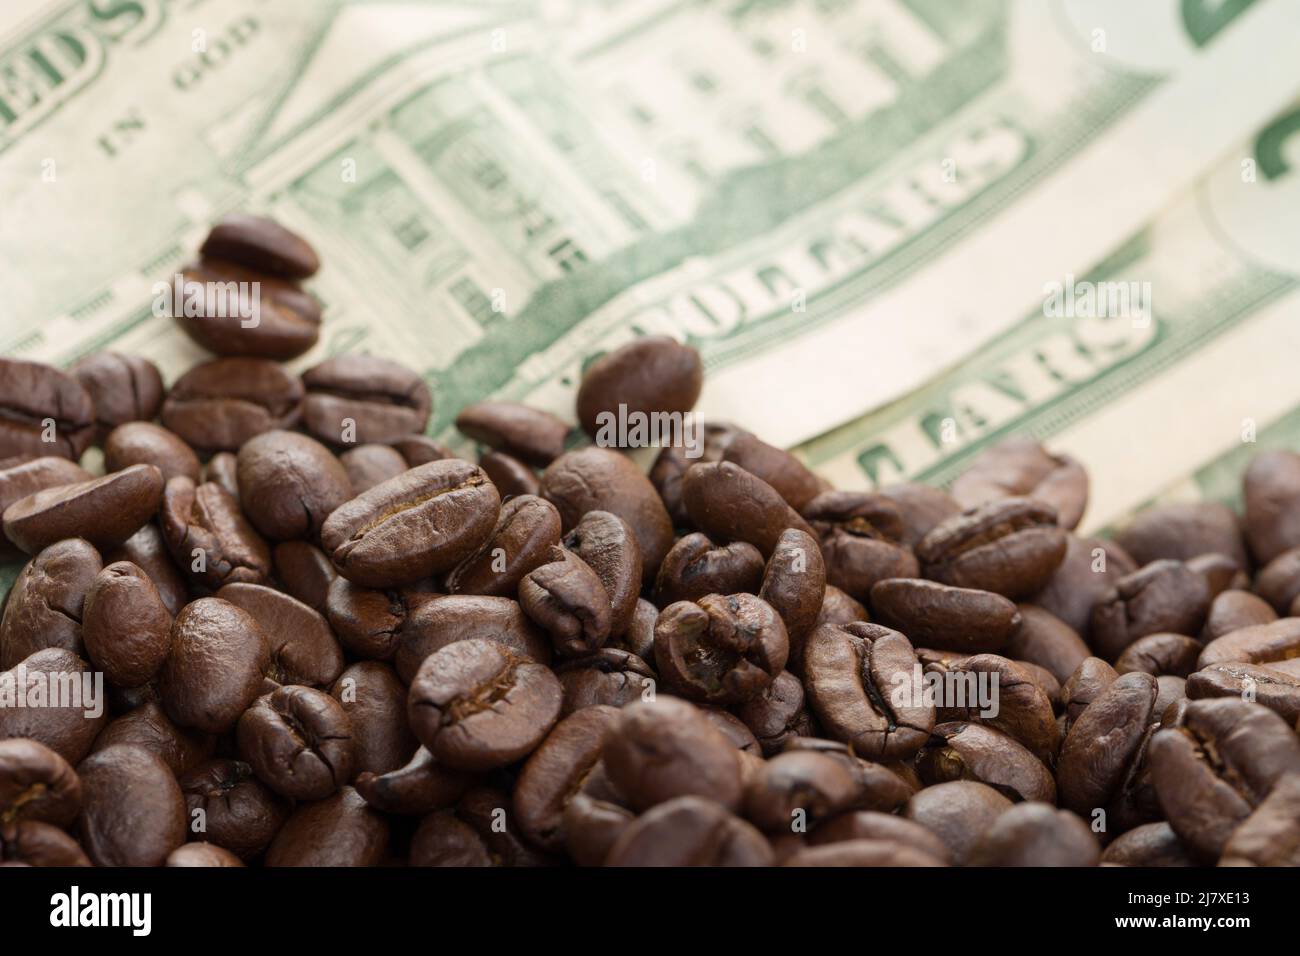 aumento dei prezzi del caffè - immagine simbolica dei chicchi di caffè e delle bollette in dollari Foto Stock